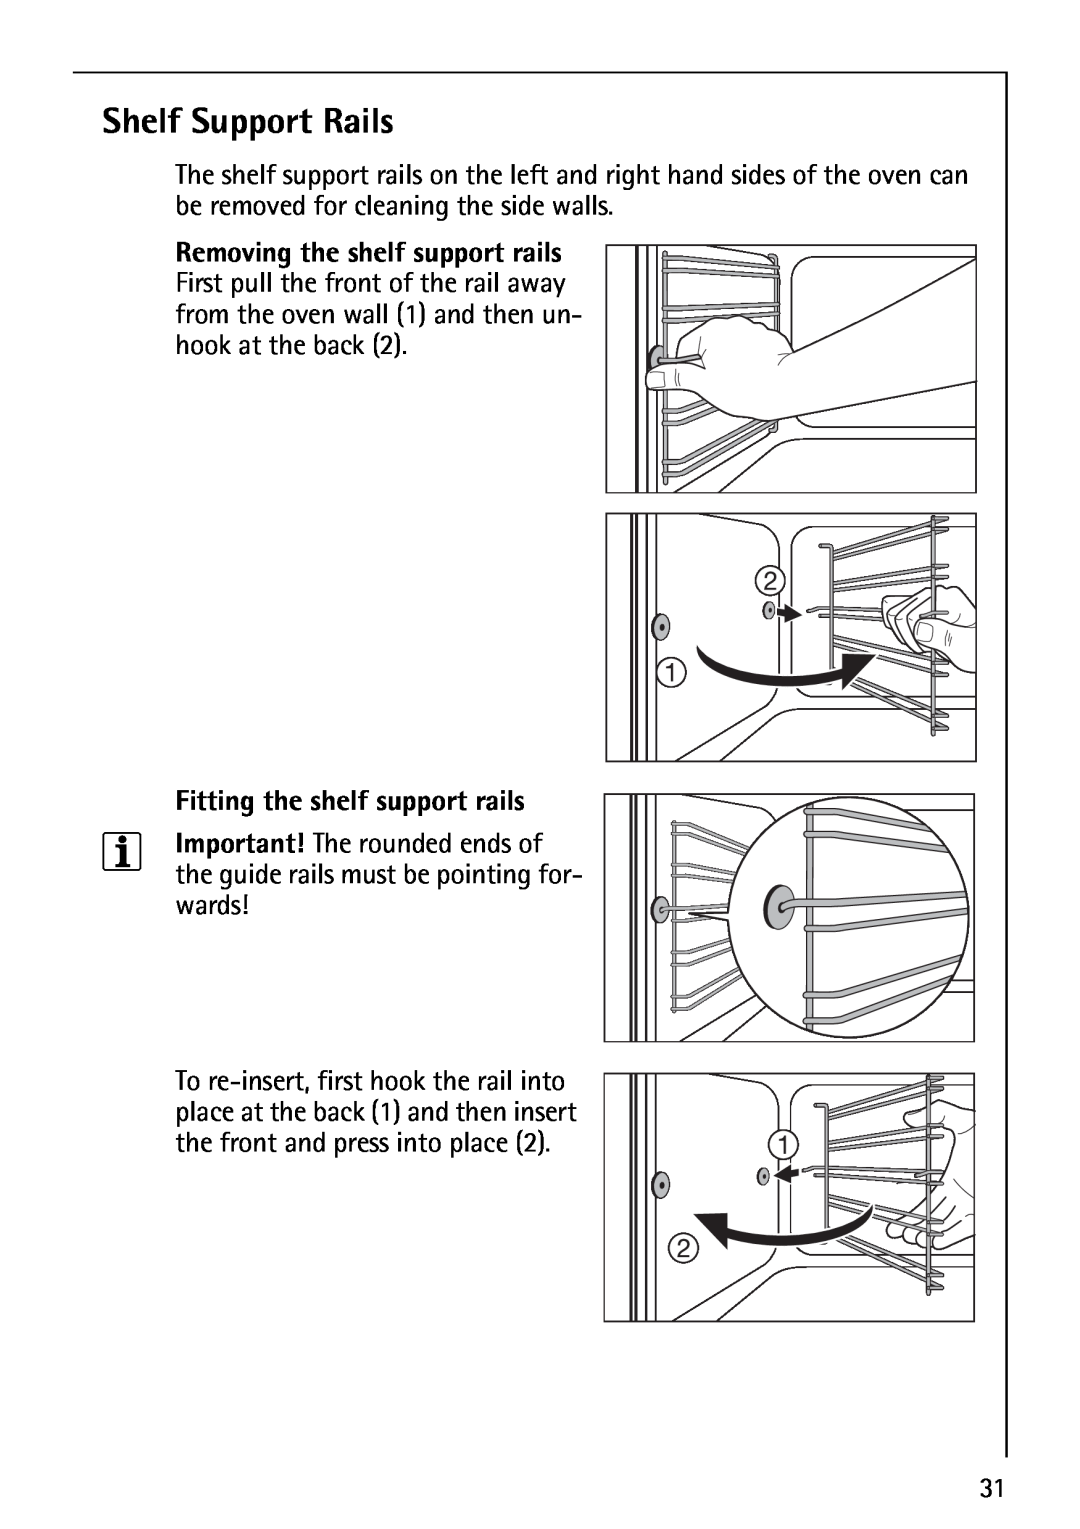 AEG B1180-4 manual Shelf Support Rails, Fitting the shelf support rails 